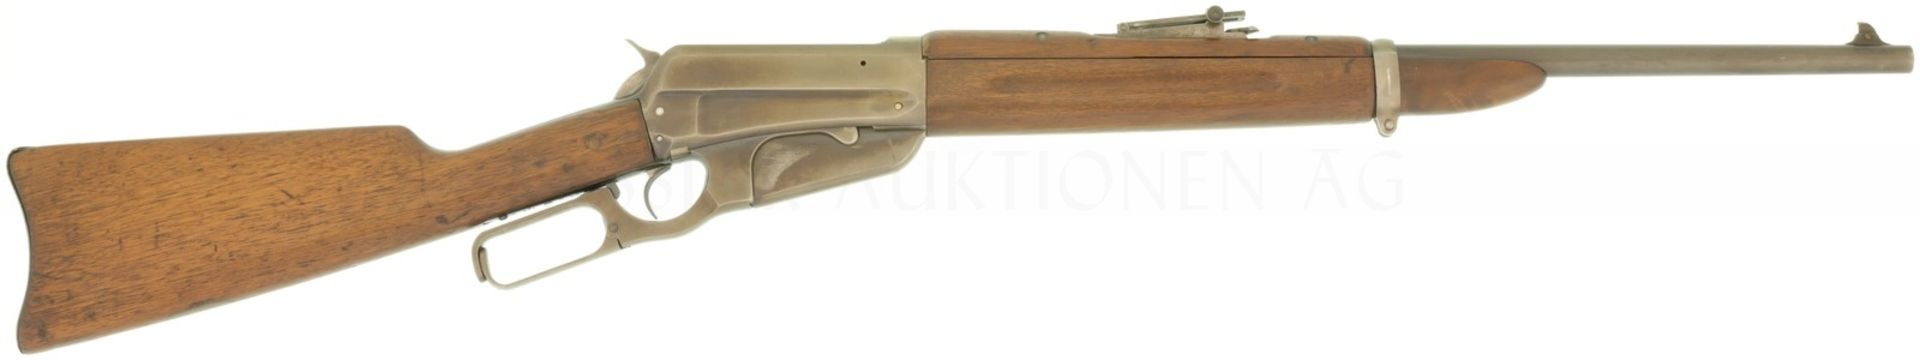 Unterhebelrepetierbüchse, Winchester 1895, Carbine, hergestellt 1912, Kal. .30-03